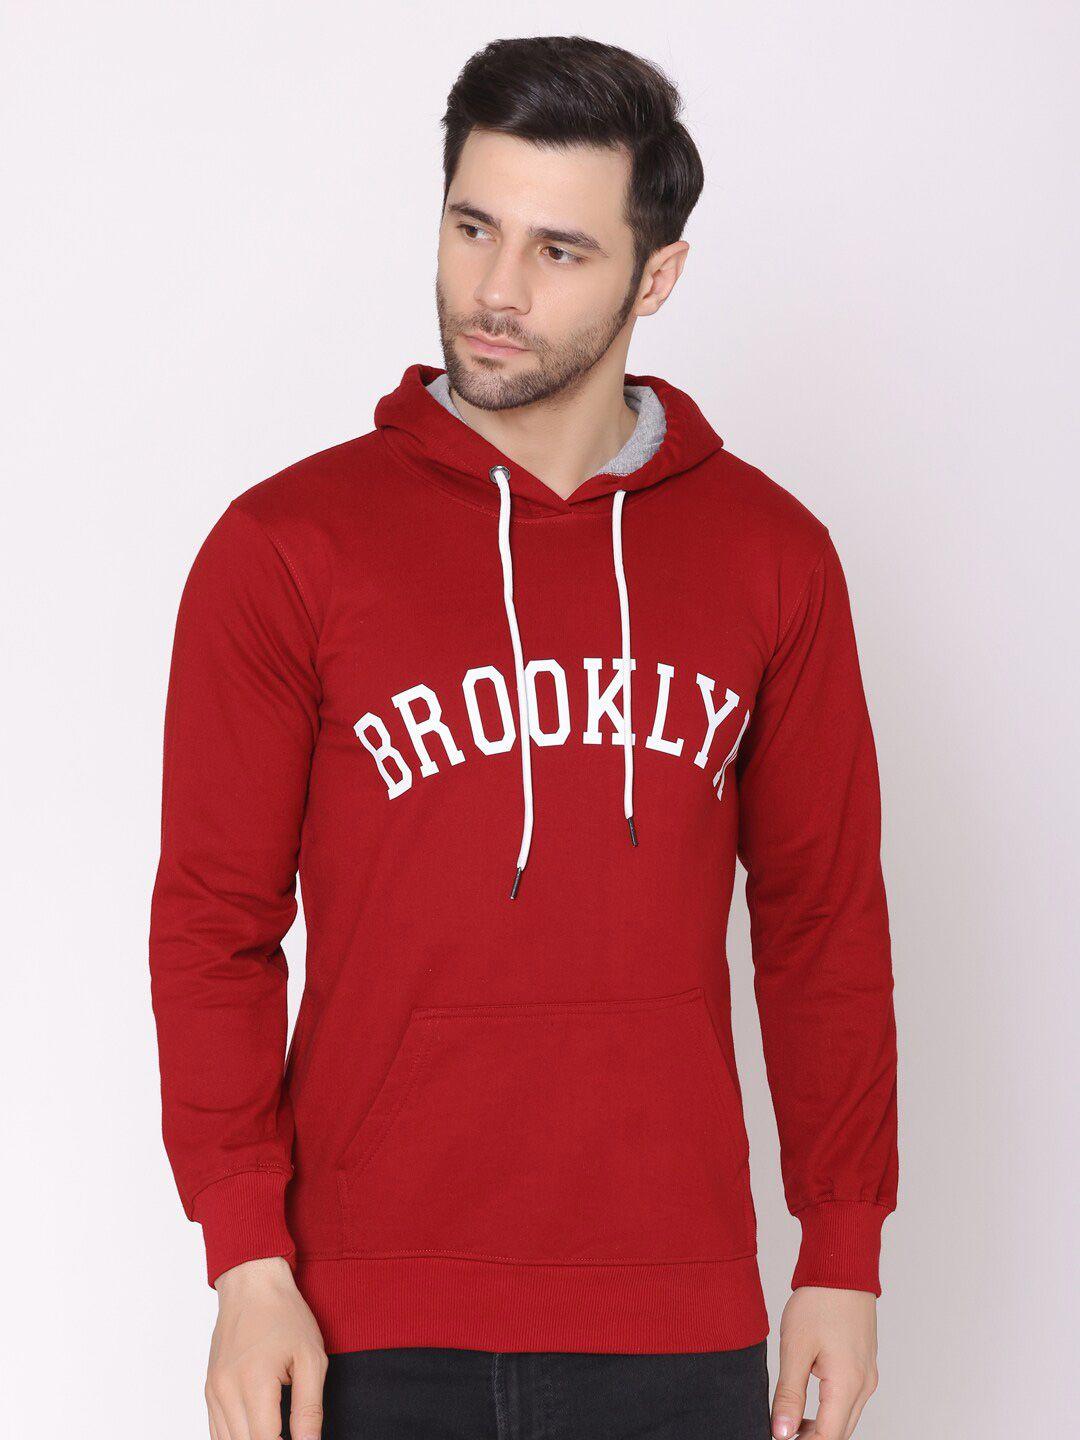 lounge-dreams-men-maroon-printed-cotton-hooded-sweatshirt